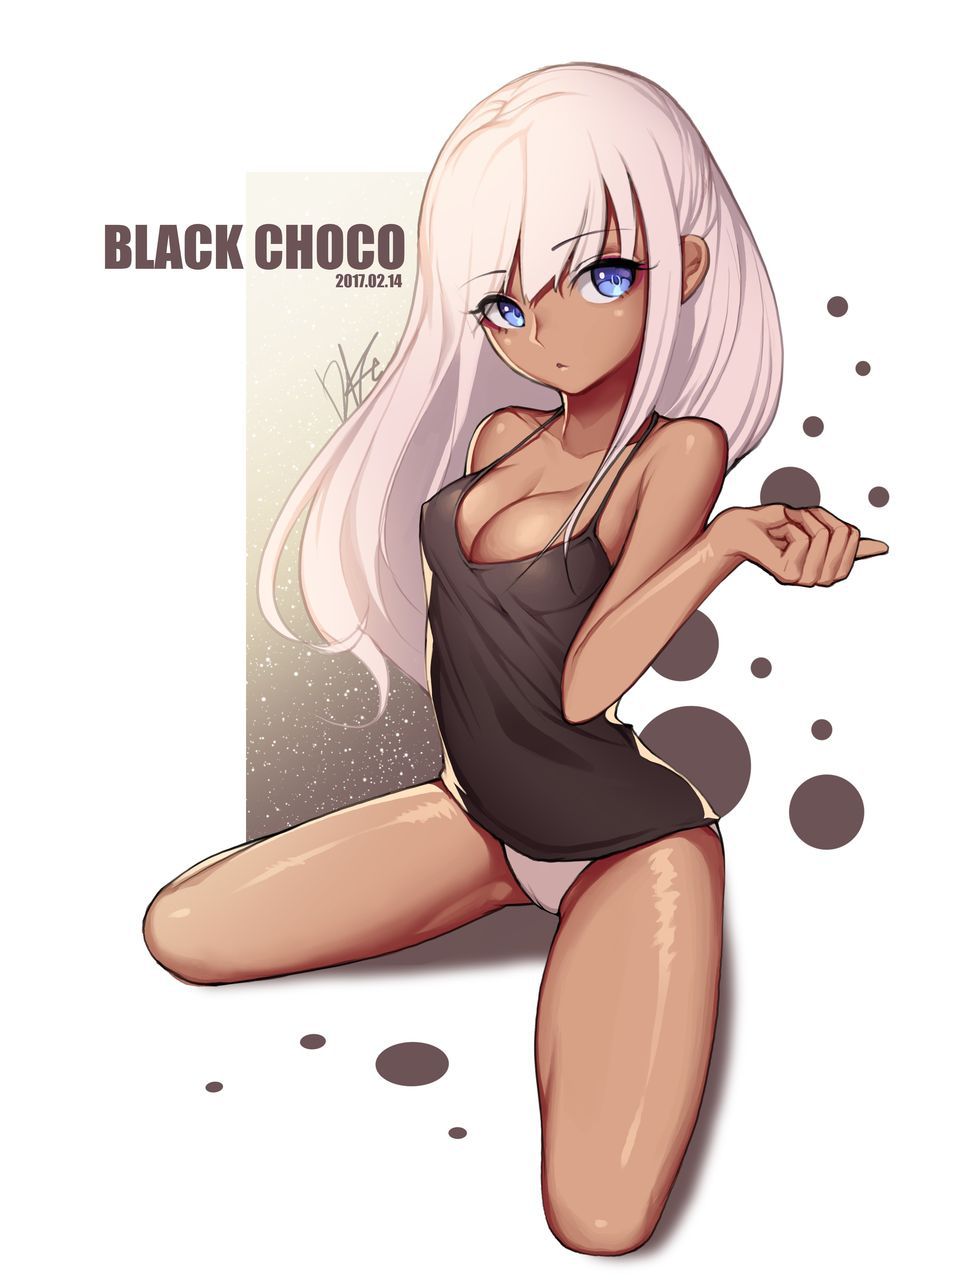 【 2nd 】 Dark skin sexy girl secondary erotic image 15 [dark skin] 31